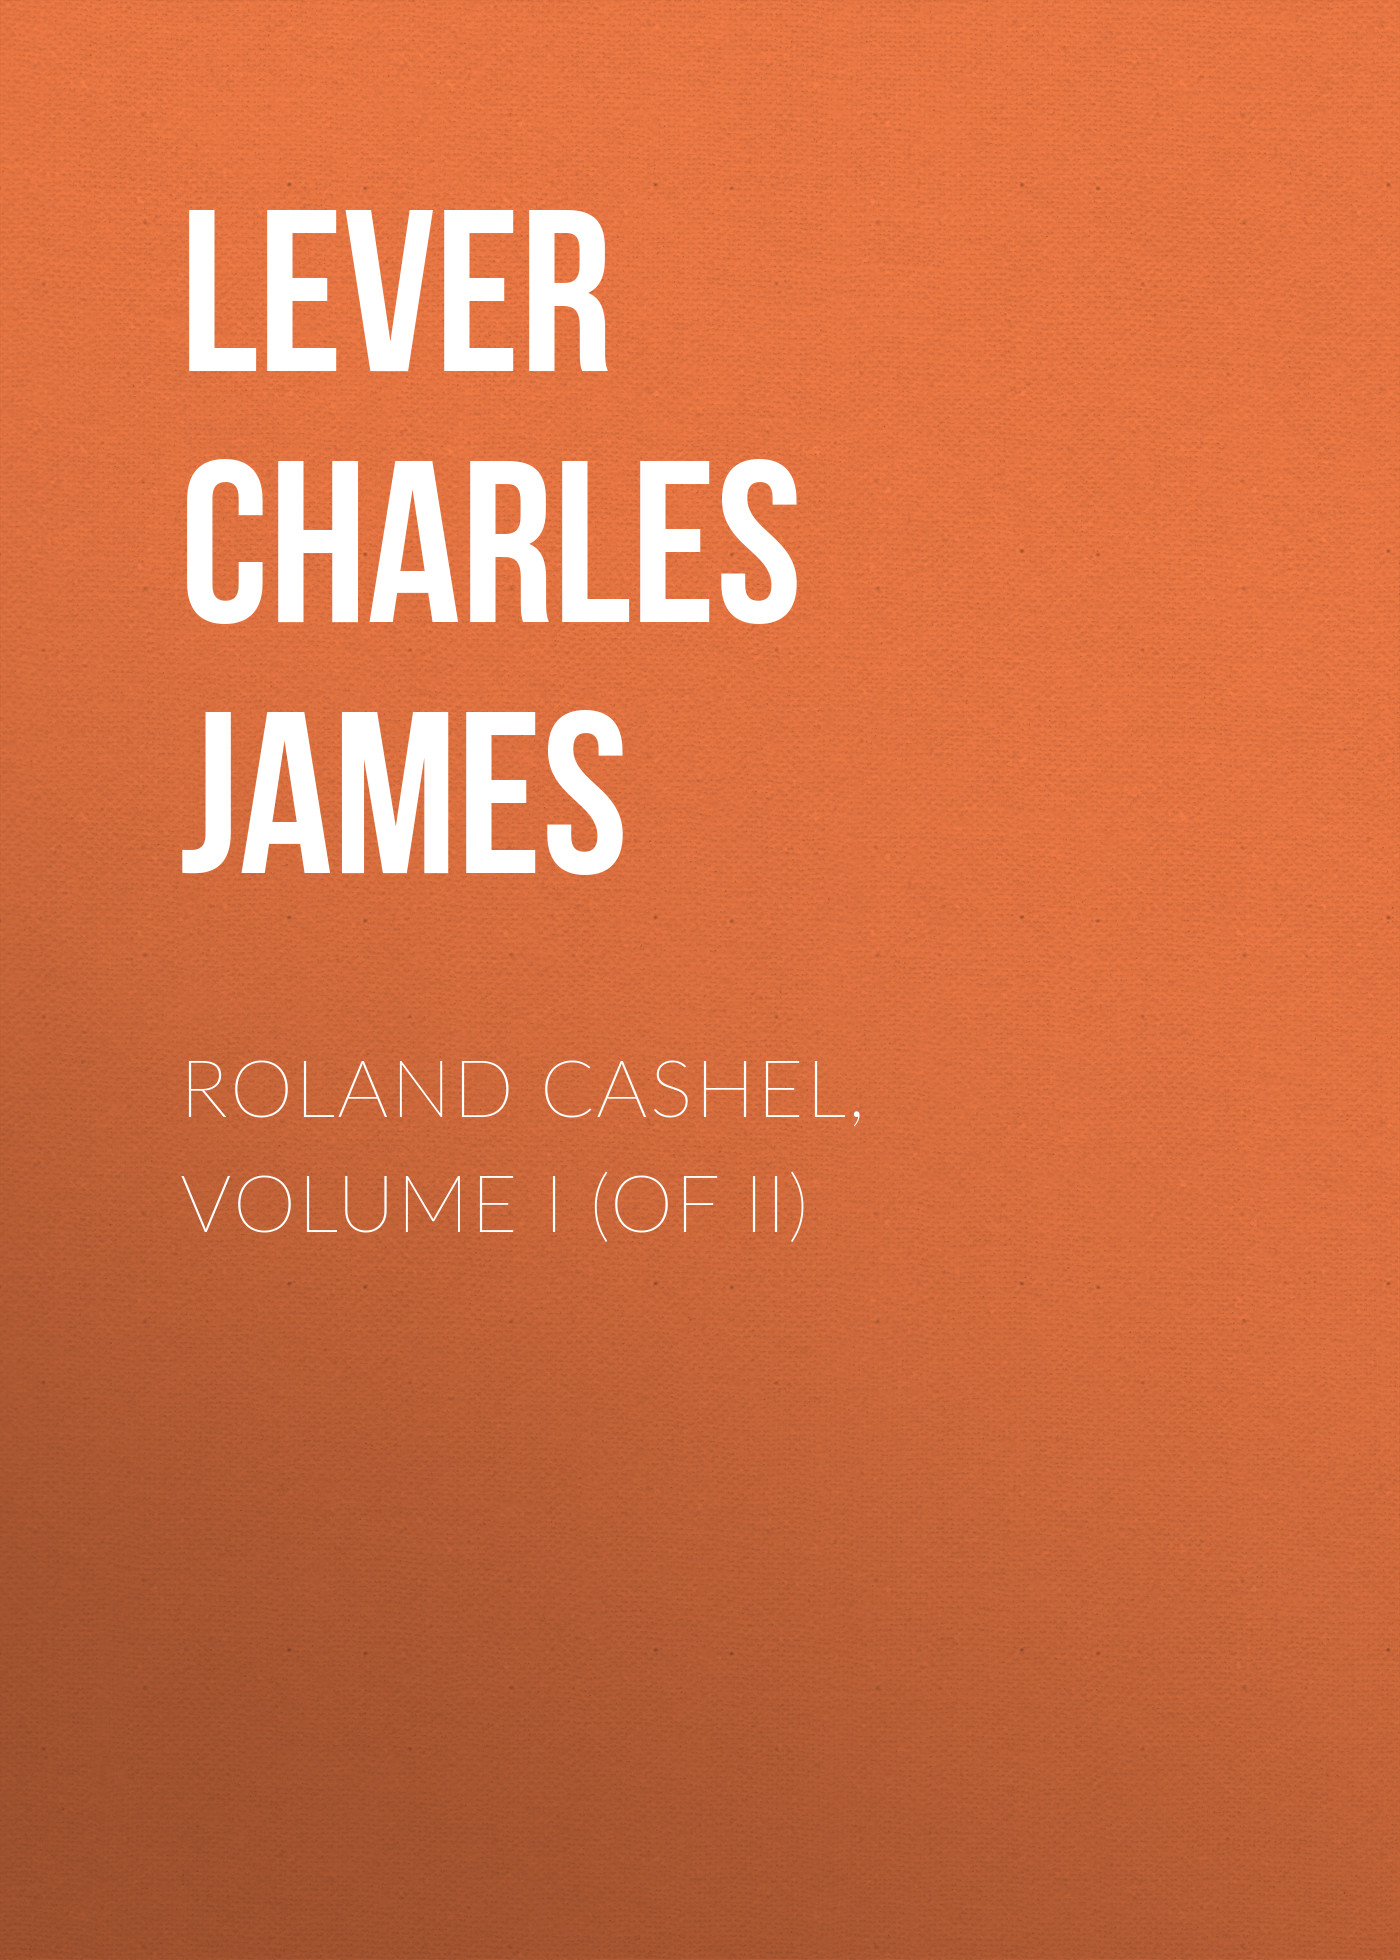 Книга Roland Cashel, Volume I (of II) из серии , созданная Charles Lever, может относится к жанру Литература 19 века, Зарубежная старинная литература, Зарубежная классика. Стоимость электронной книги Roland Cashel, Volume I (of II) с идентификатором 25451172 составляет 0 руб.